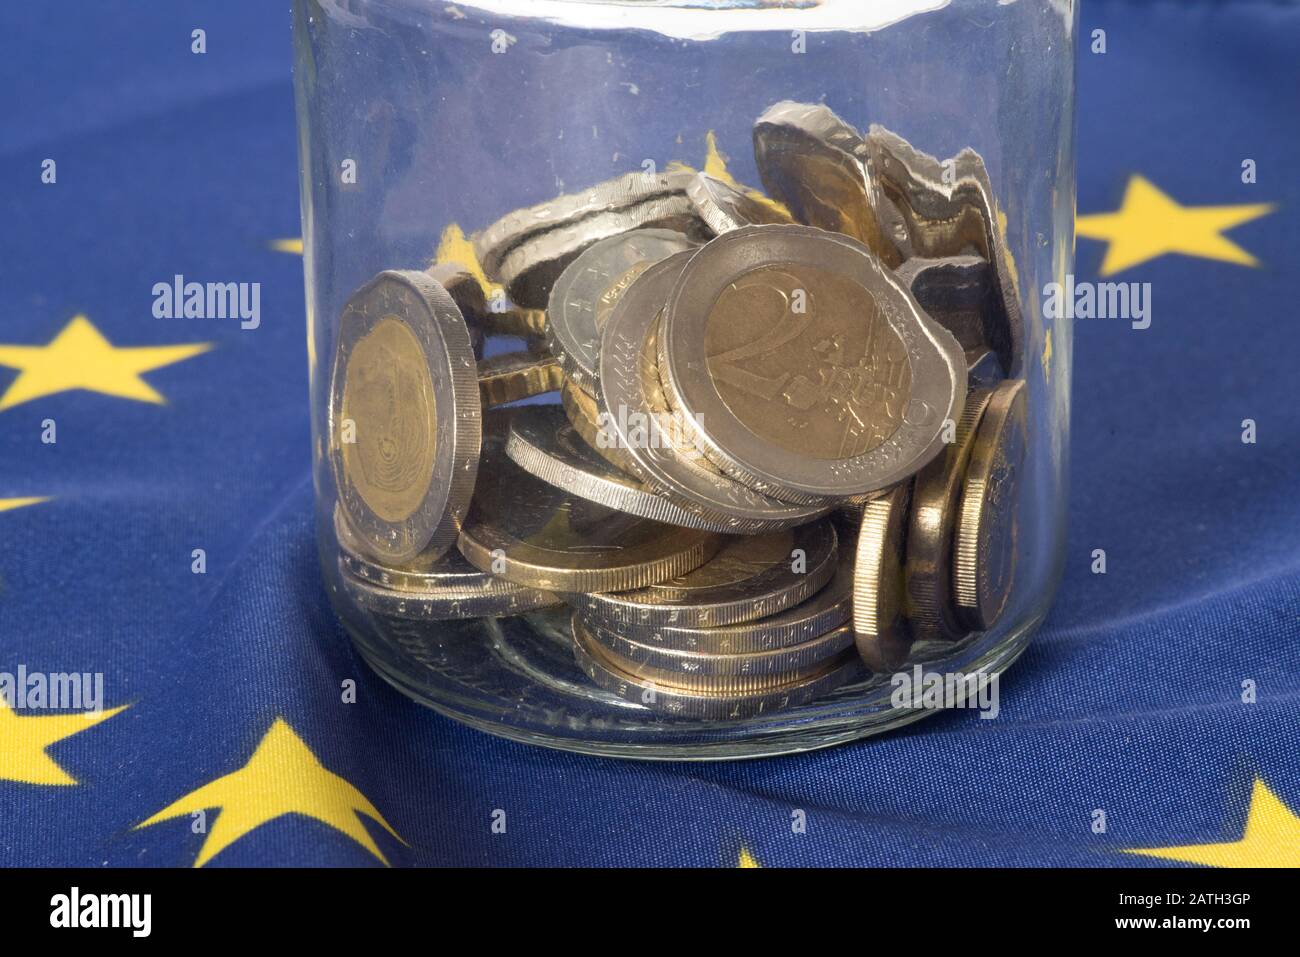 Mason jar, European Union flag and Euro money Stock Photo